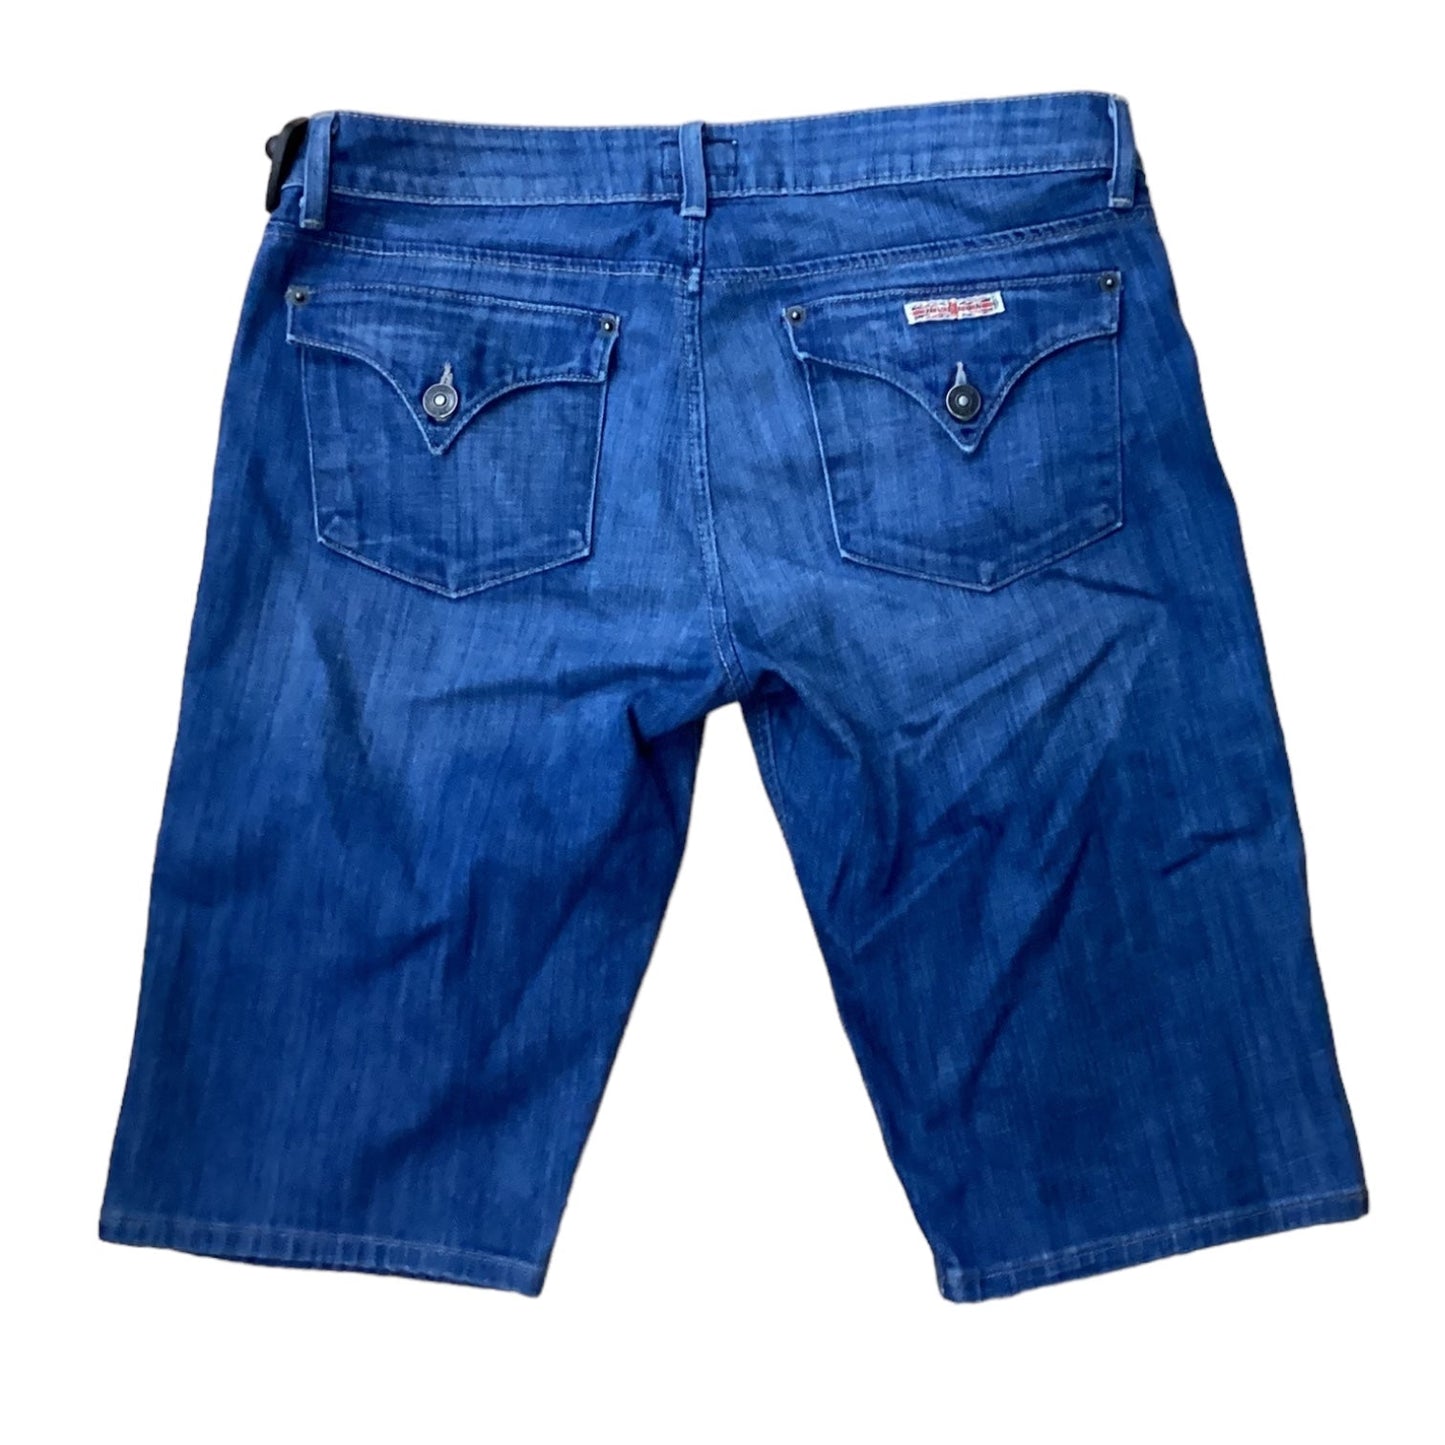 Blue Denim Shorts Designer Hudson, Size 8